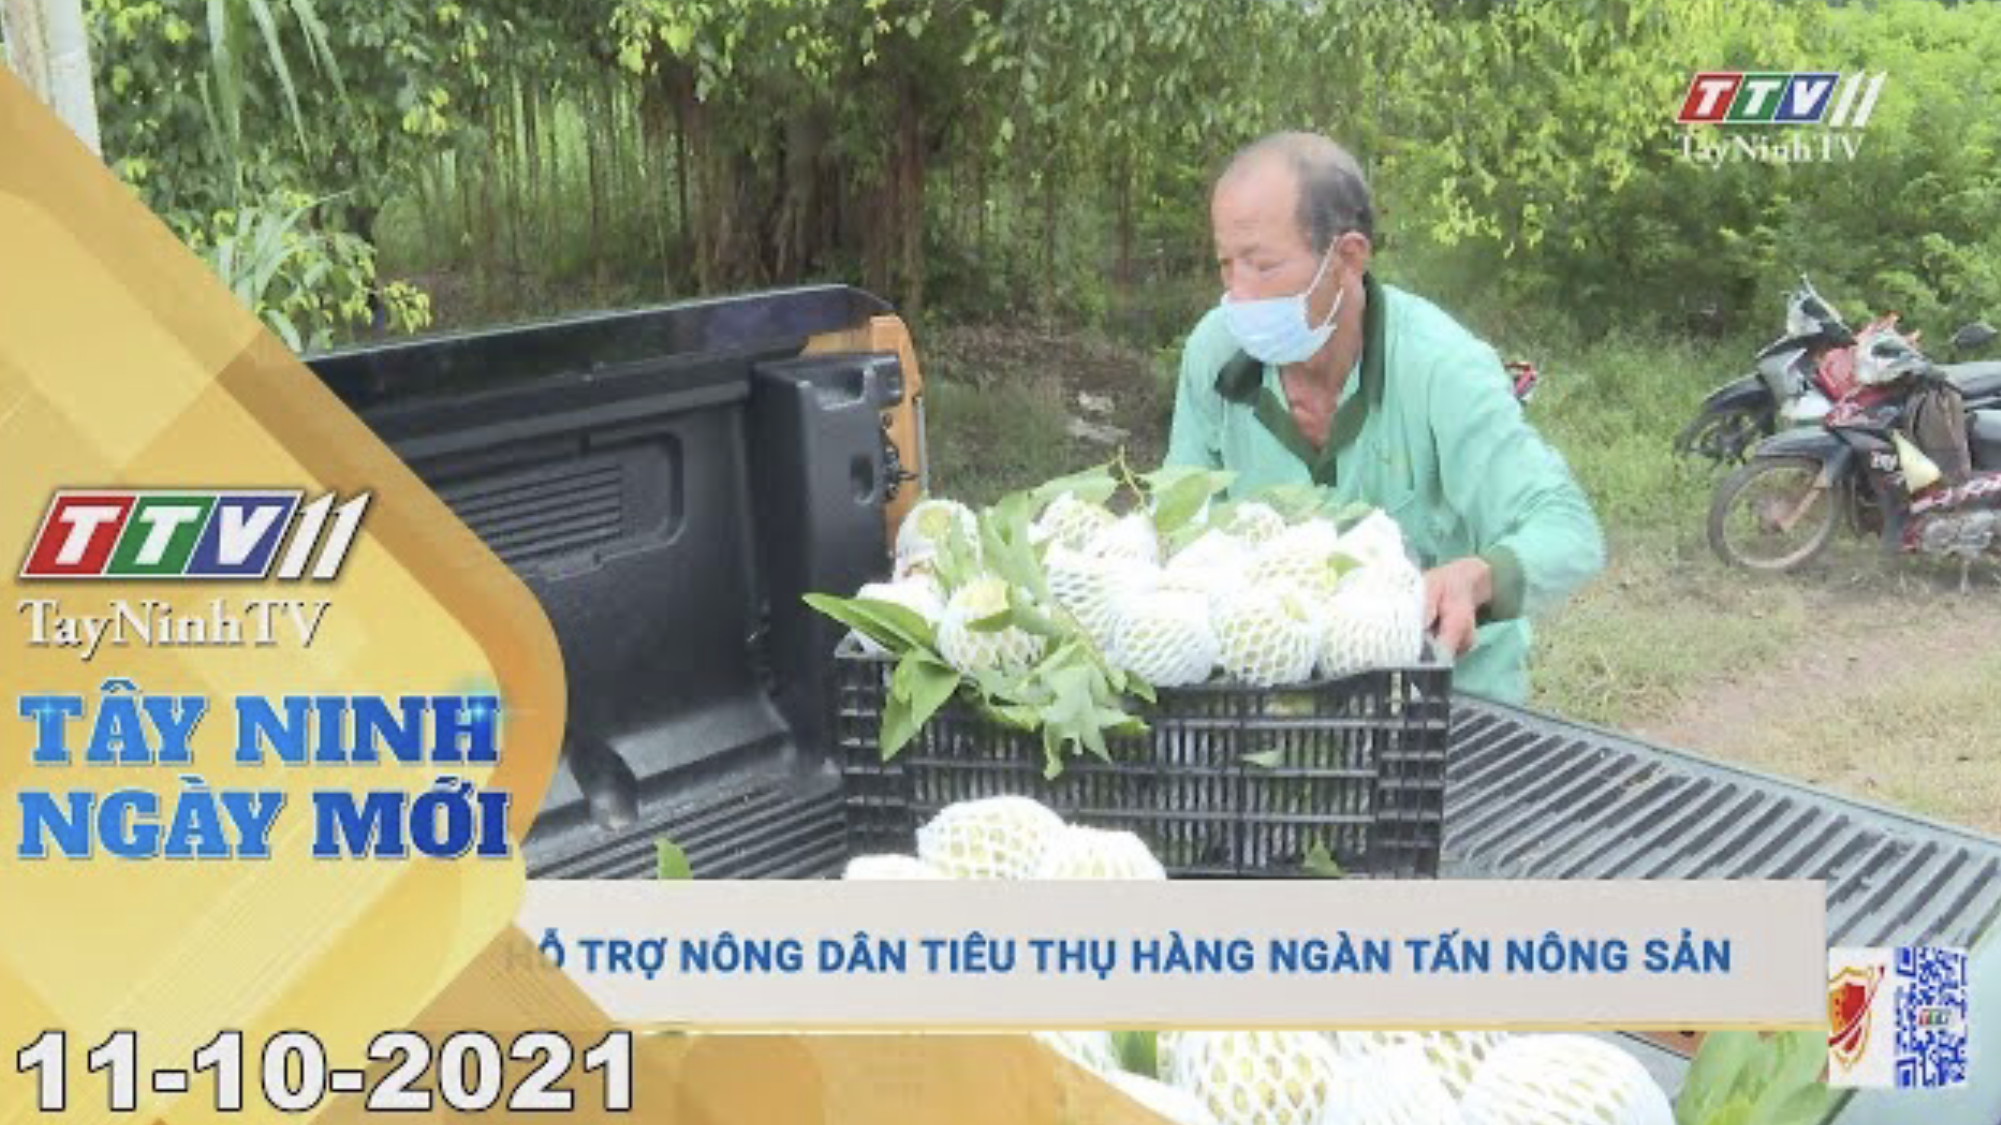 TÂY NINH NGÀY MỚI 11/10/2021 | Tin tức hôm nay | TayNinhTV